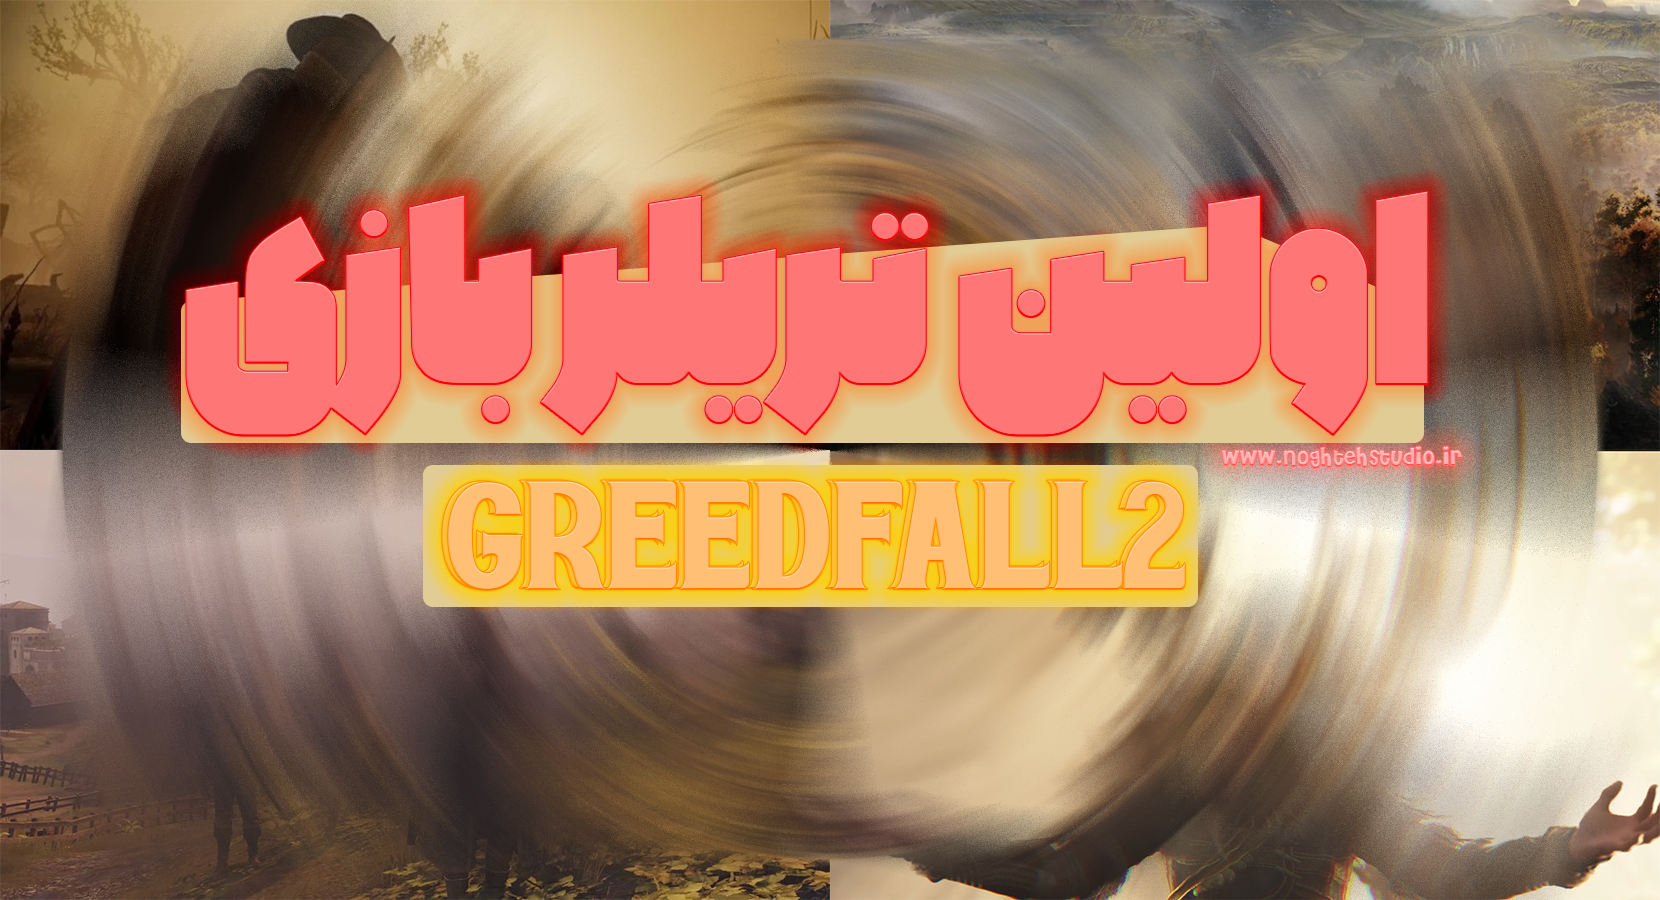 اولین تریلر greedfall2 منتشر شد!